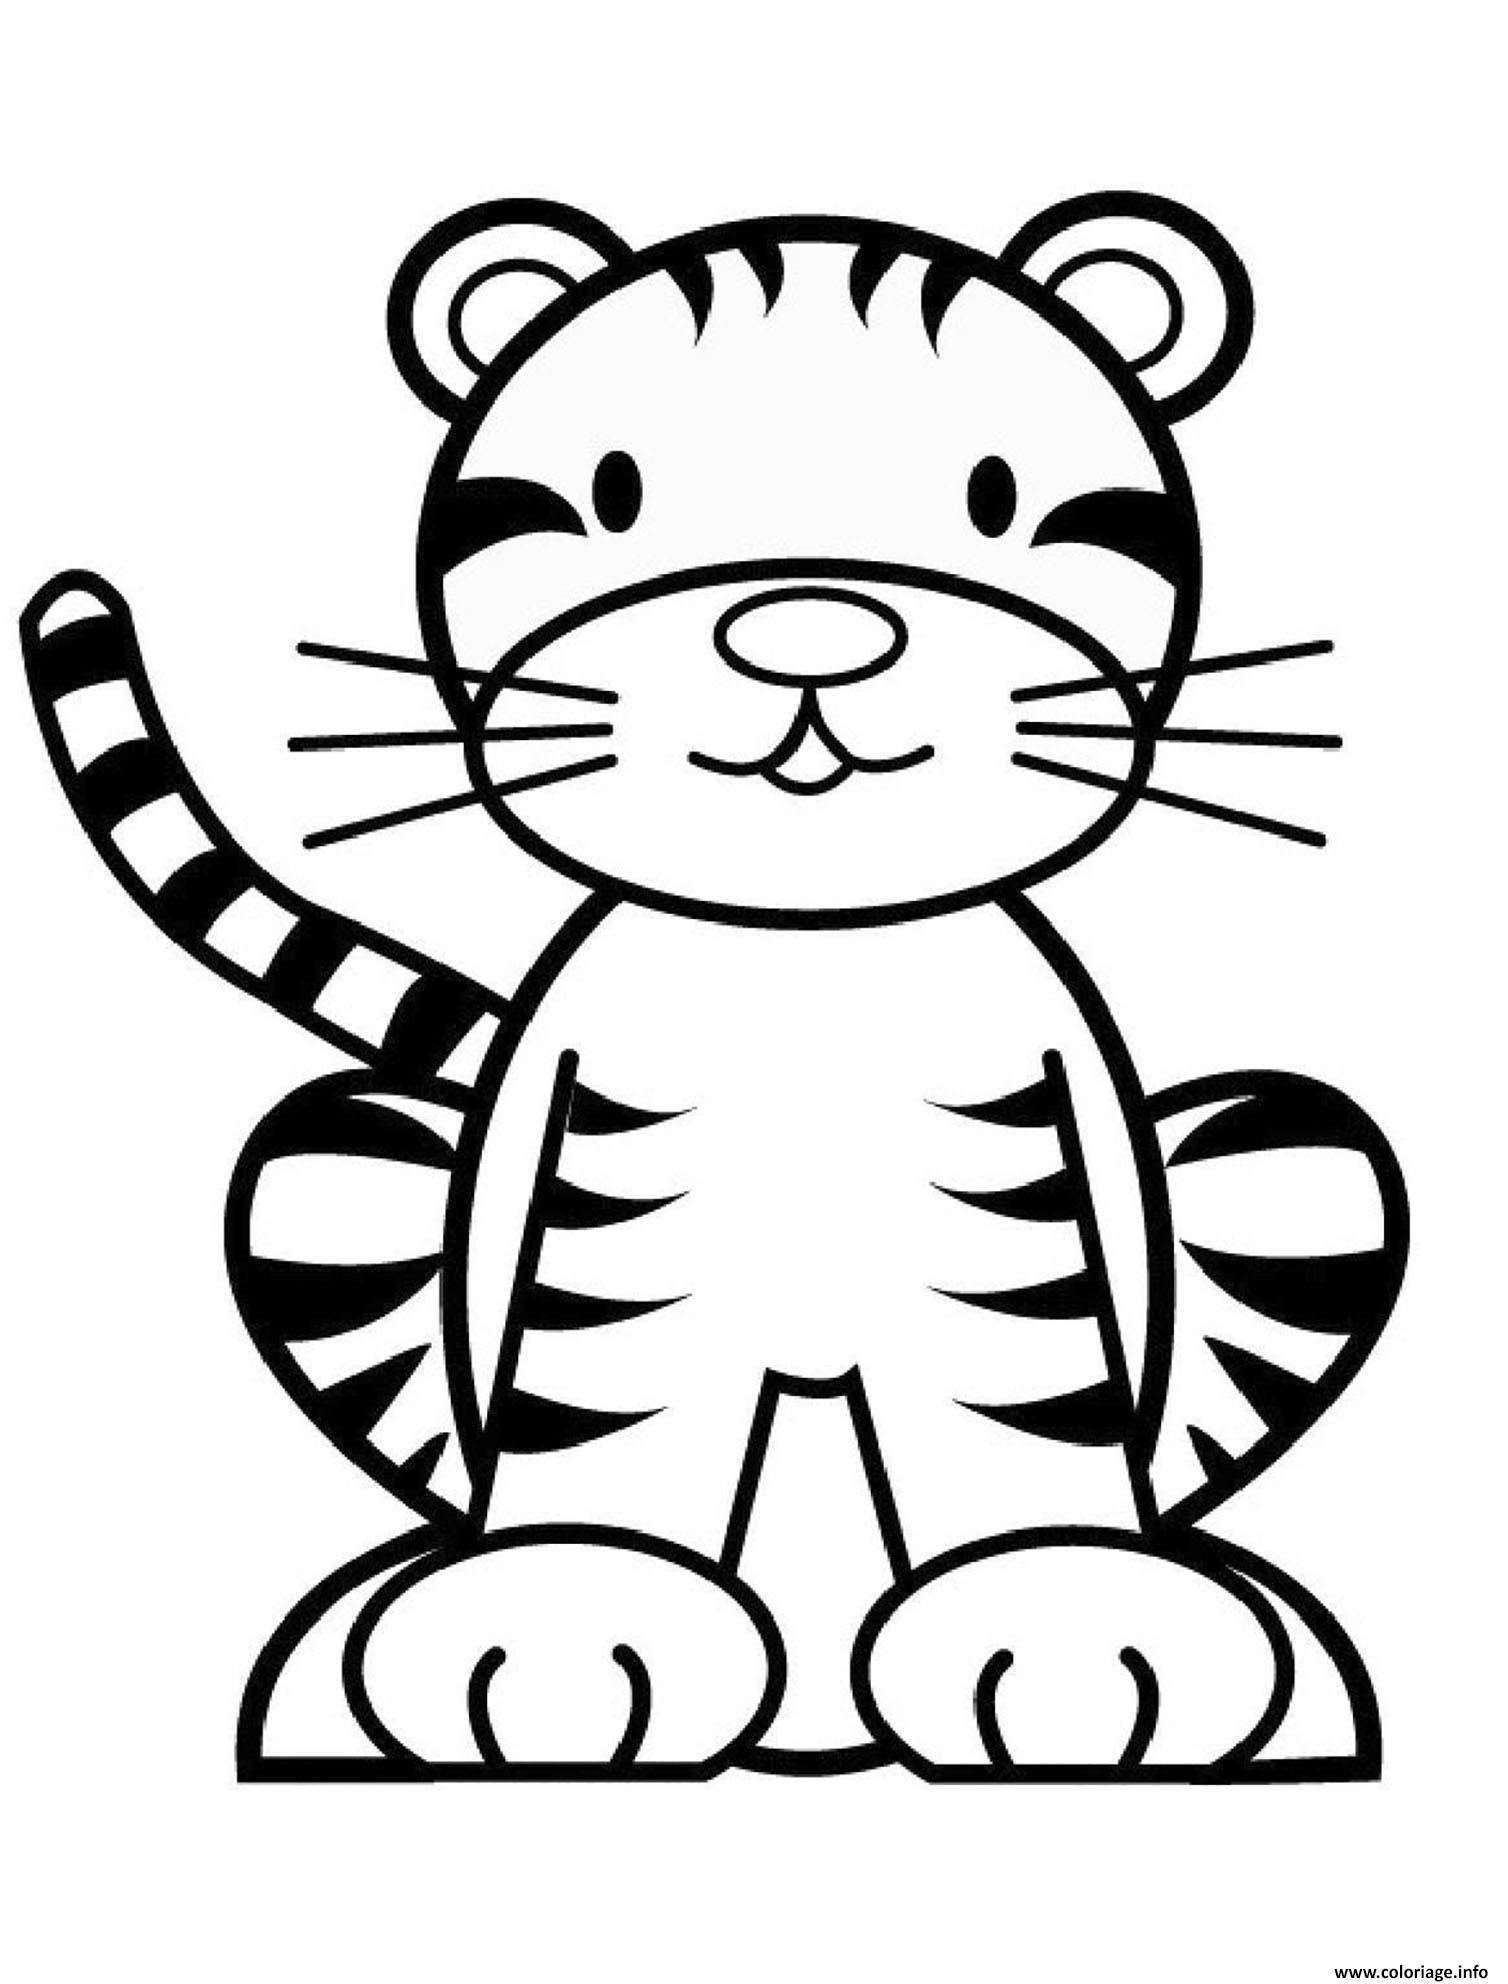 Coloriage Tigre Tigron Simple Pour Enfants - Jecolorie intérieur Tigre Coloriage 